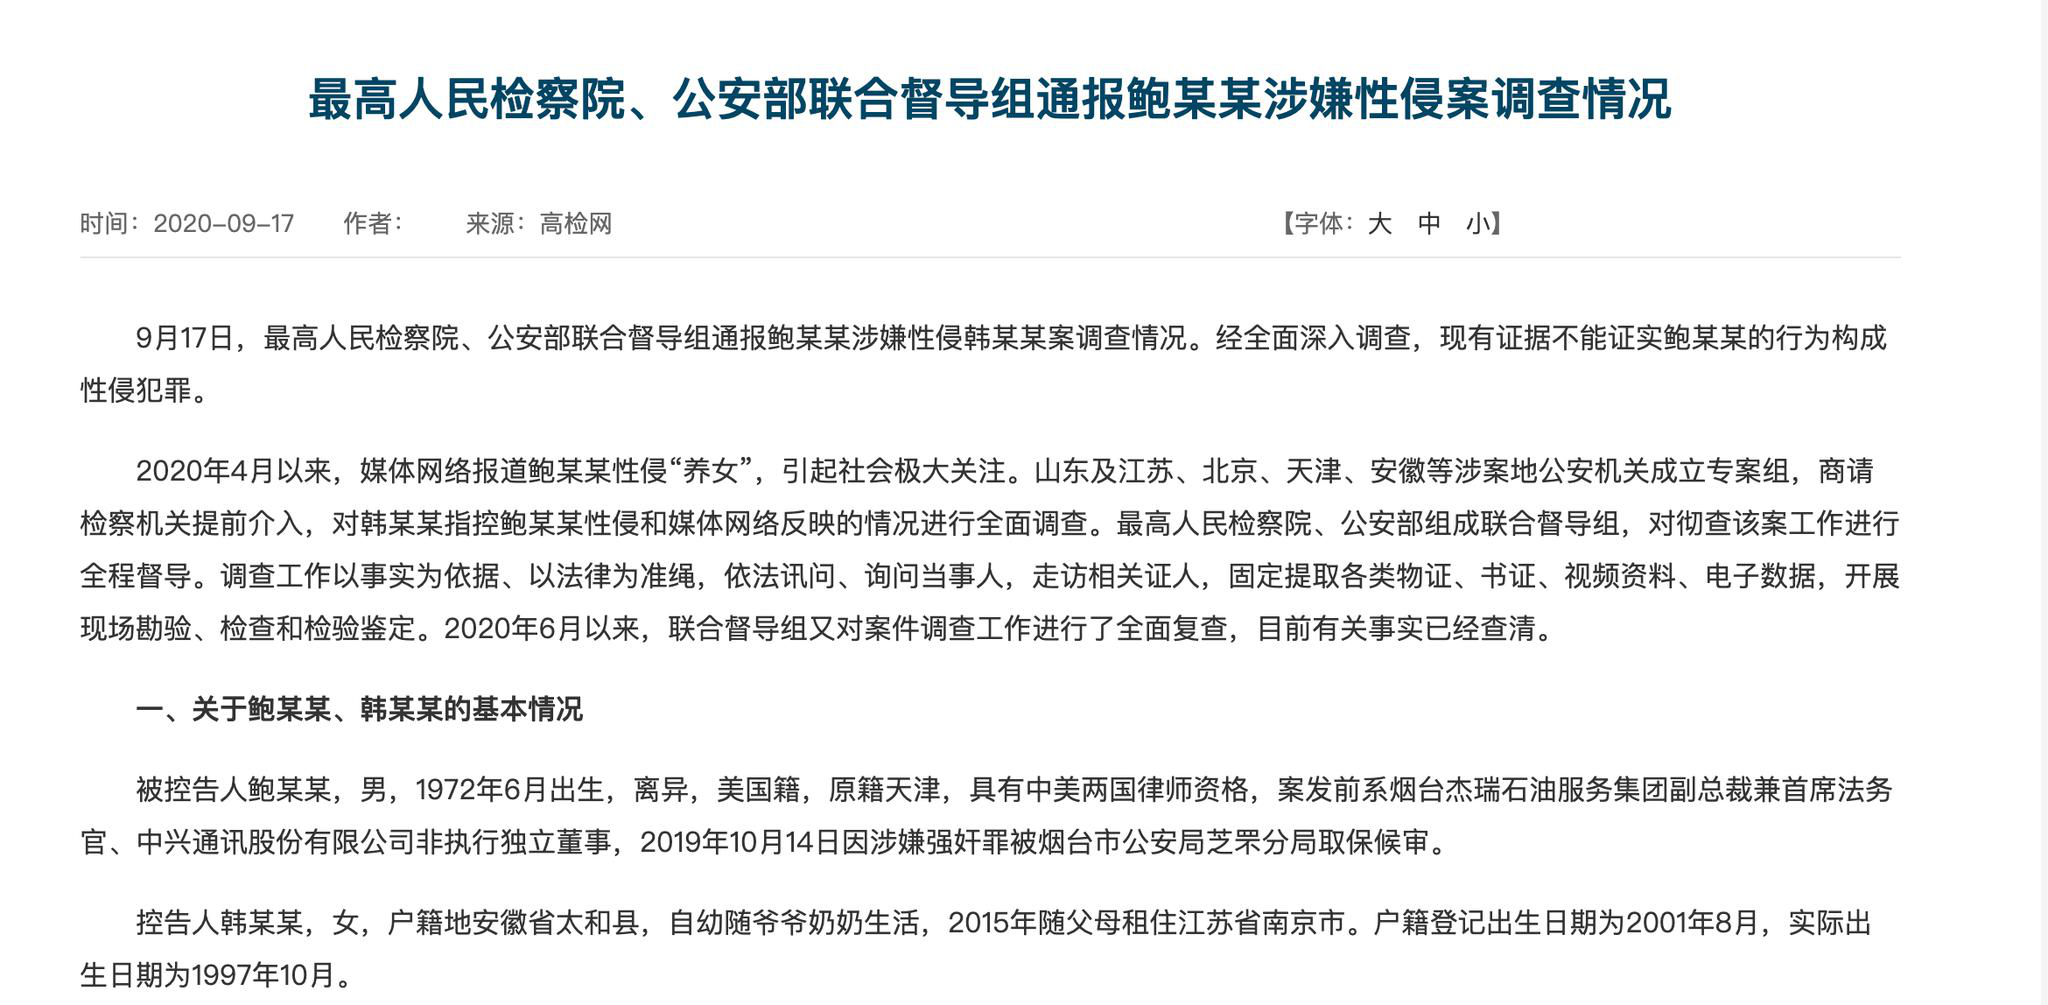 最新 官方通报鲍毓明案调查结果 不构成性侵犯罪养女年龄不实